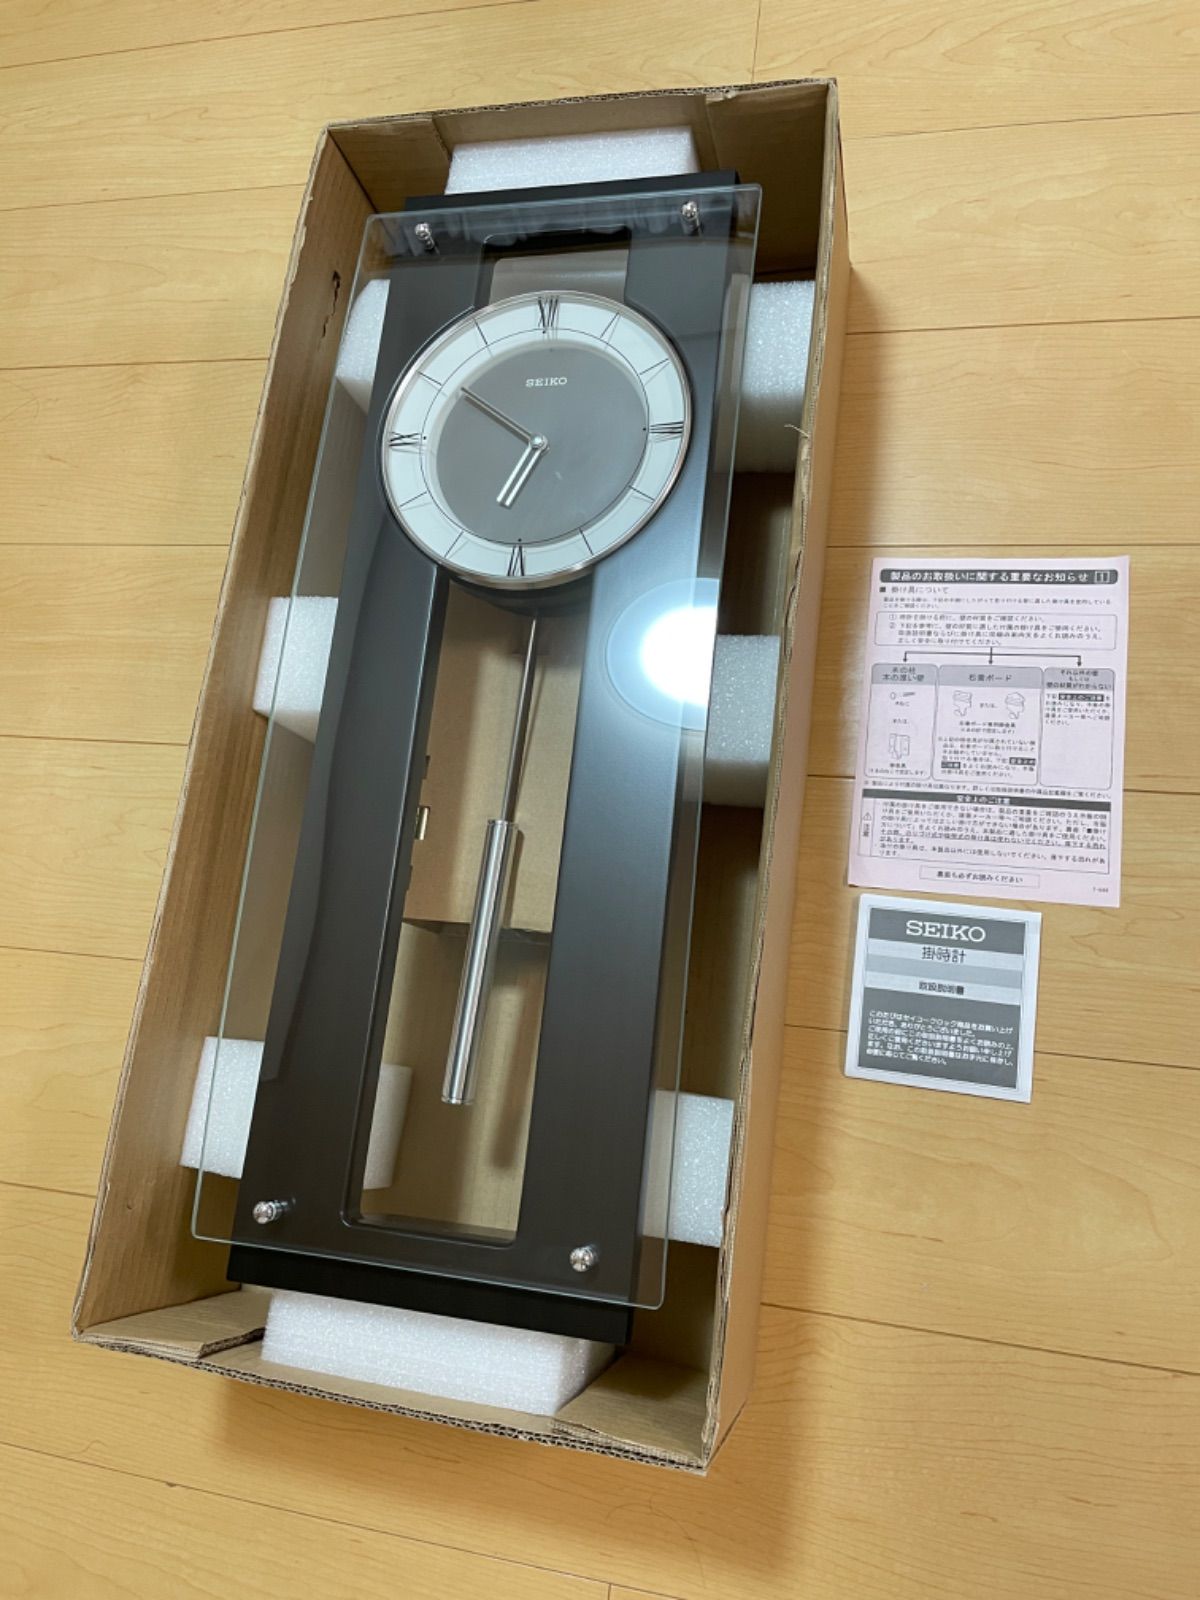 人気SALE新品訳あり品 セイコー高級掛時計 定価25,000円 PH450B アナログ